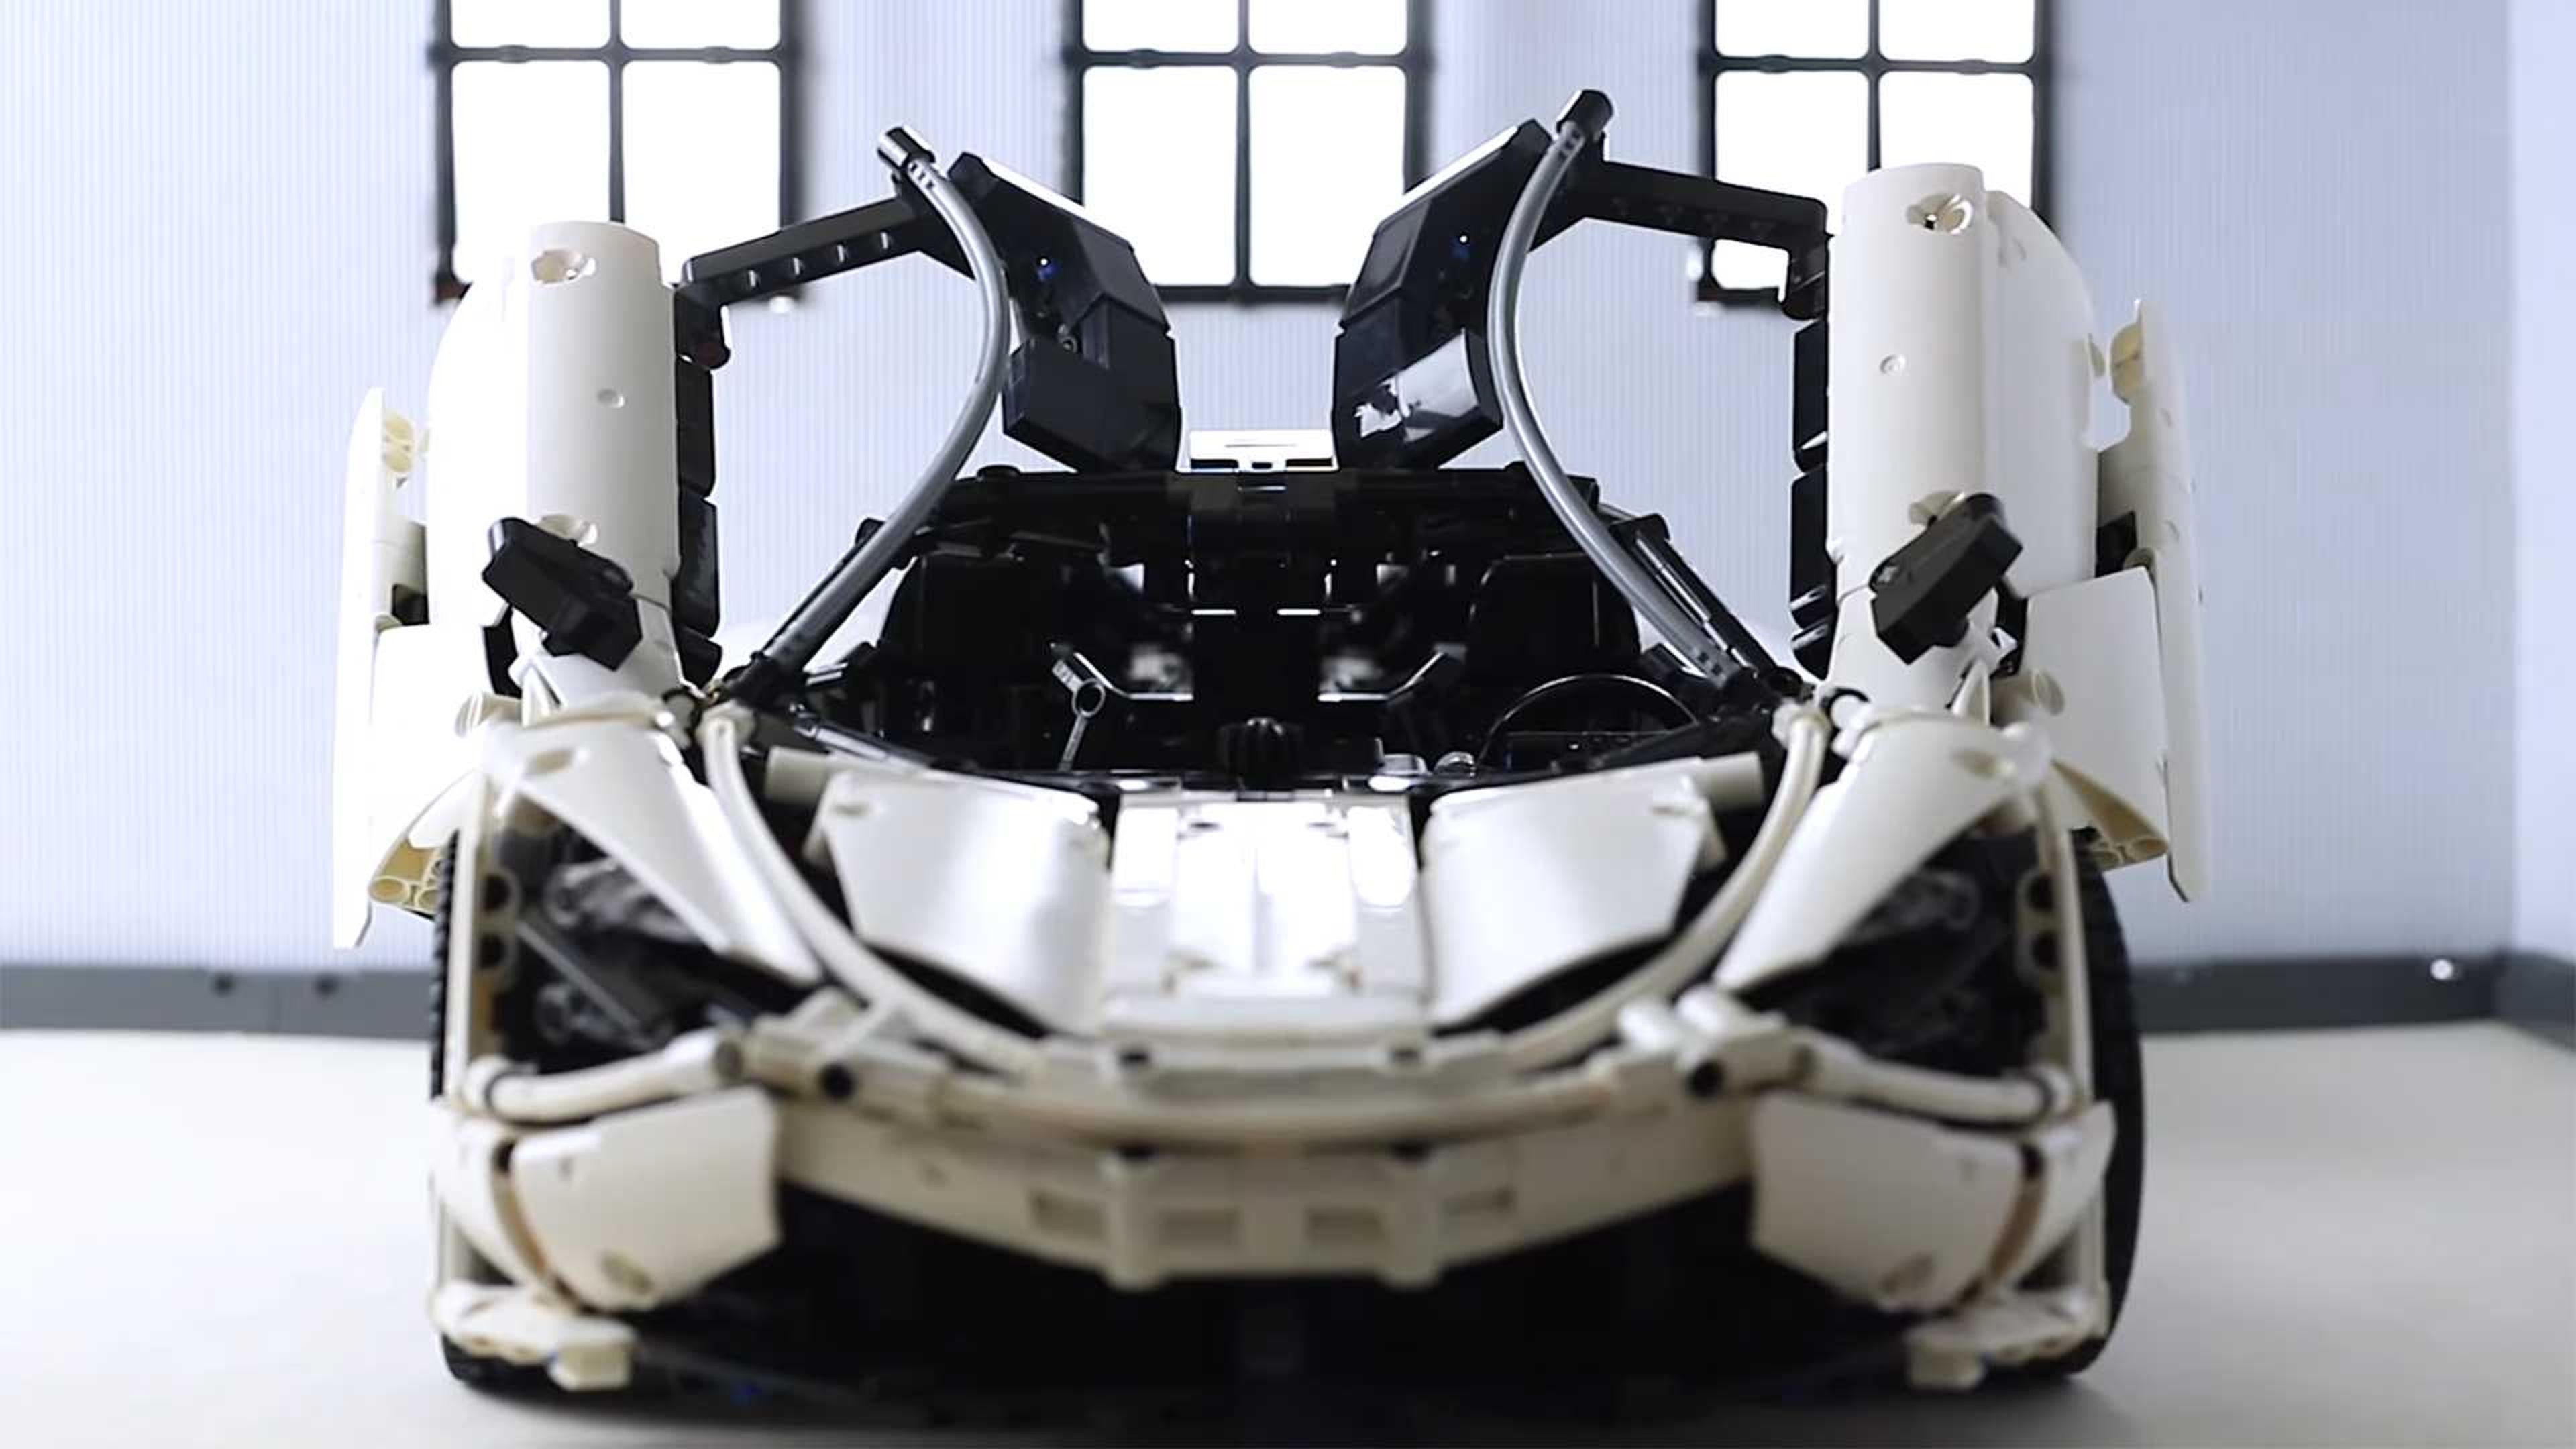 Construir este McLaren 720S personalizado de Lego llevó dos años